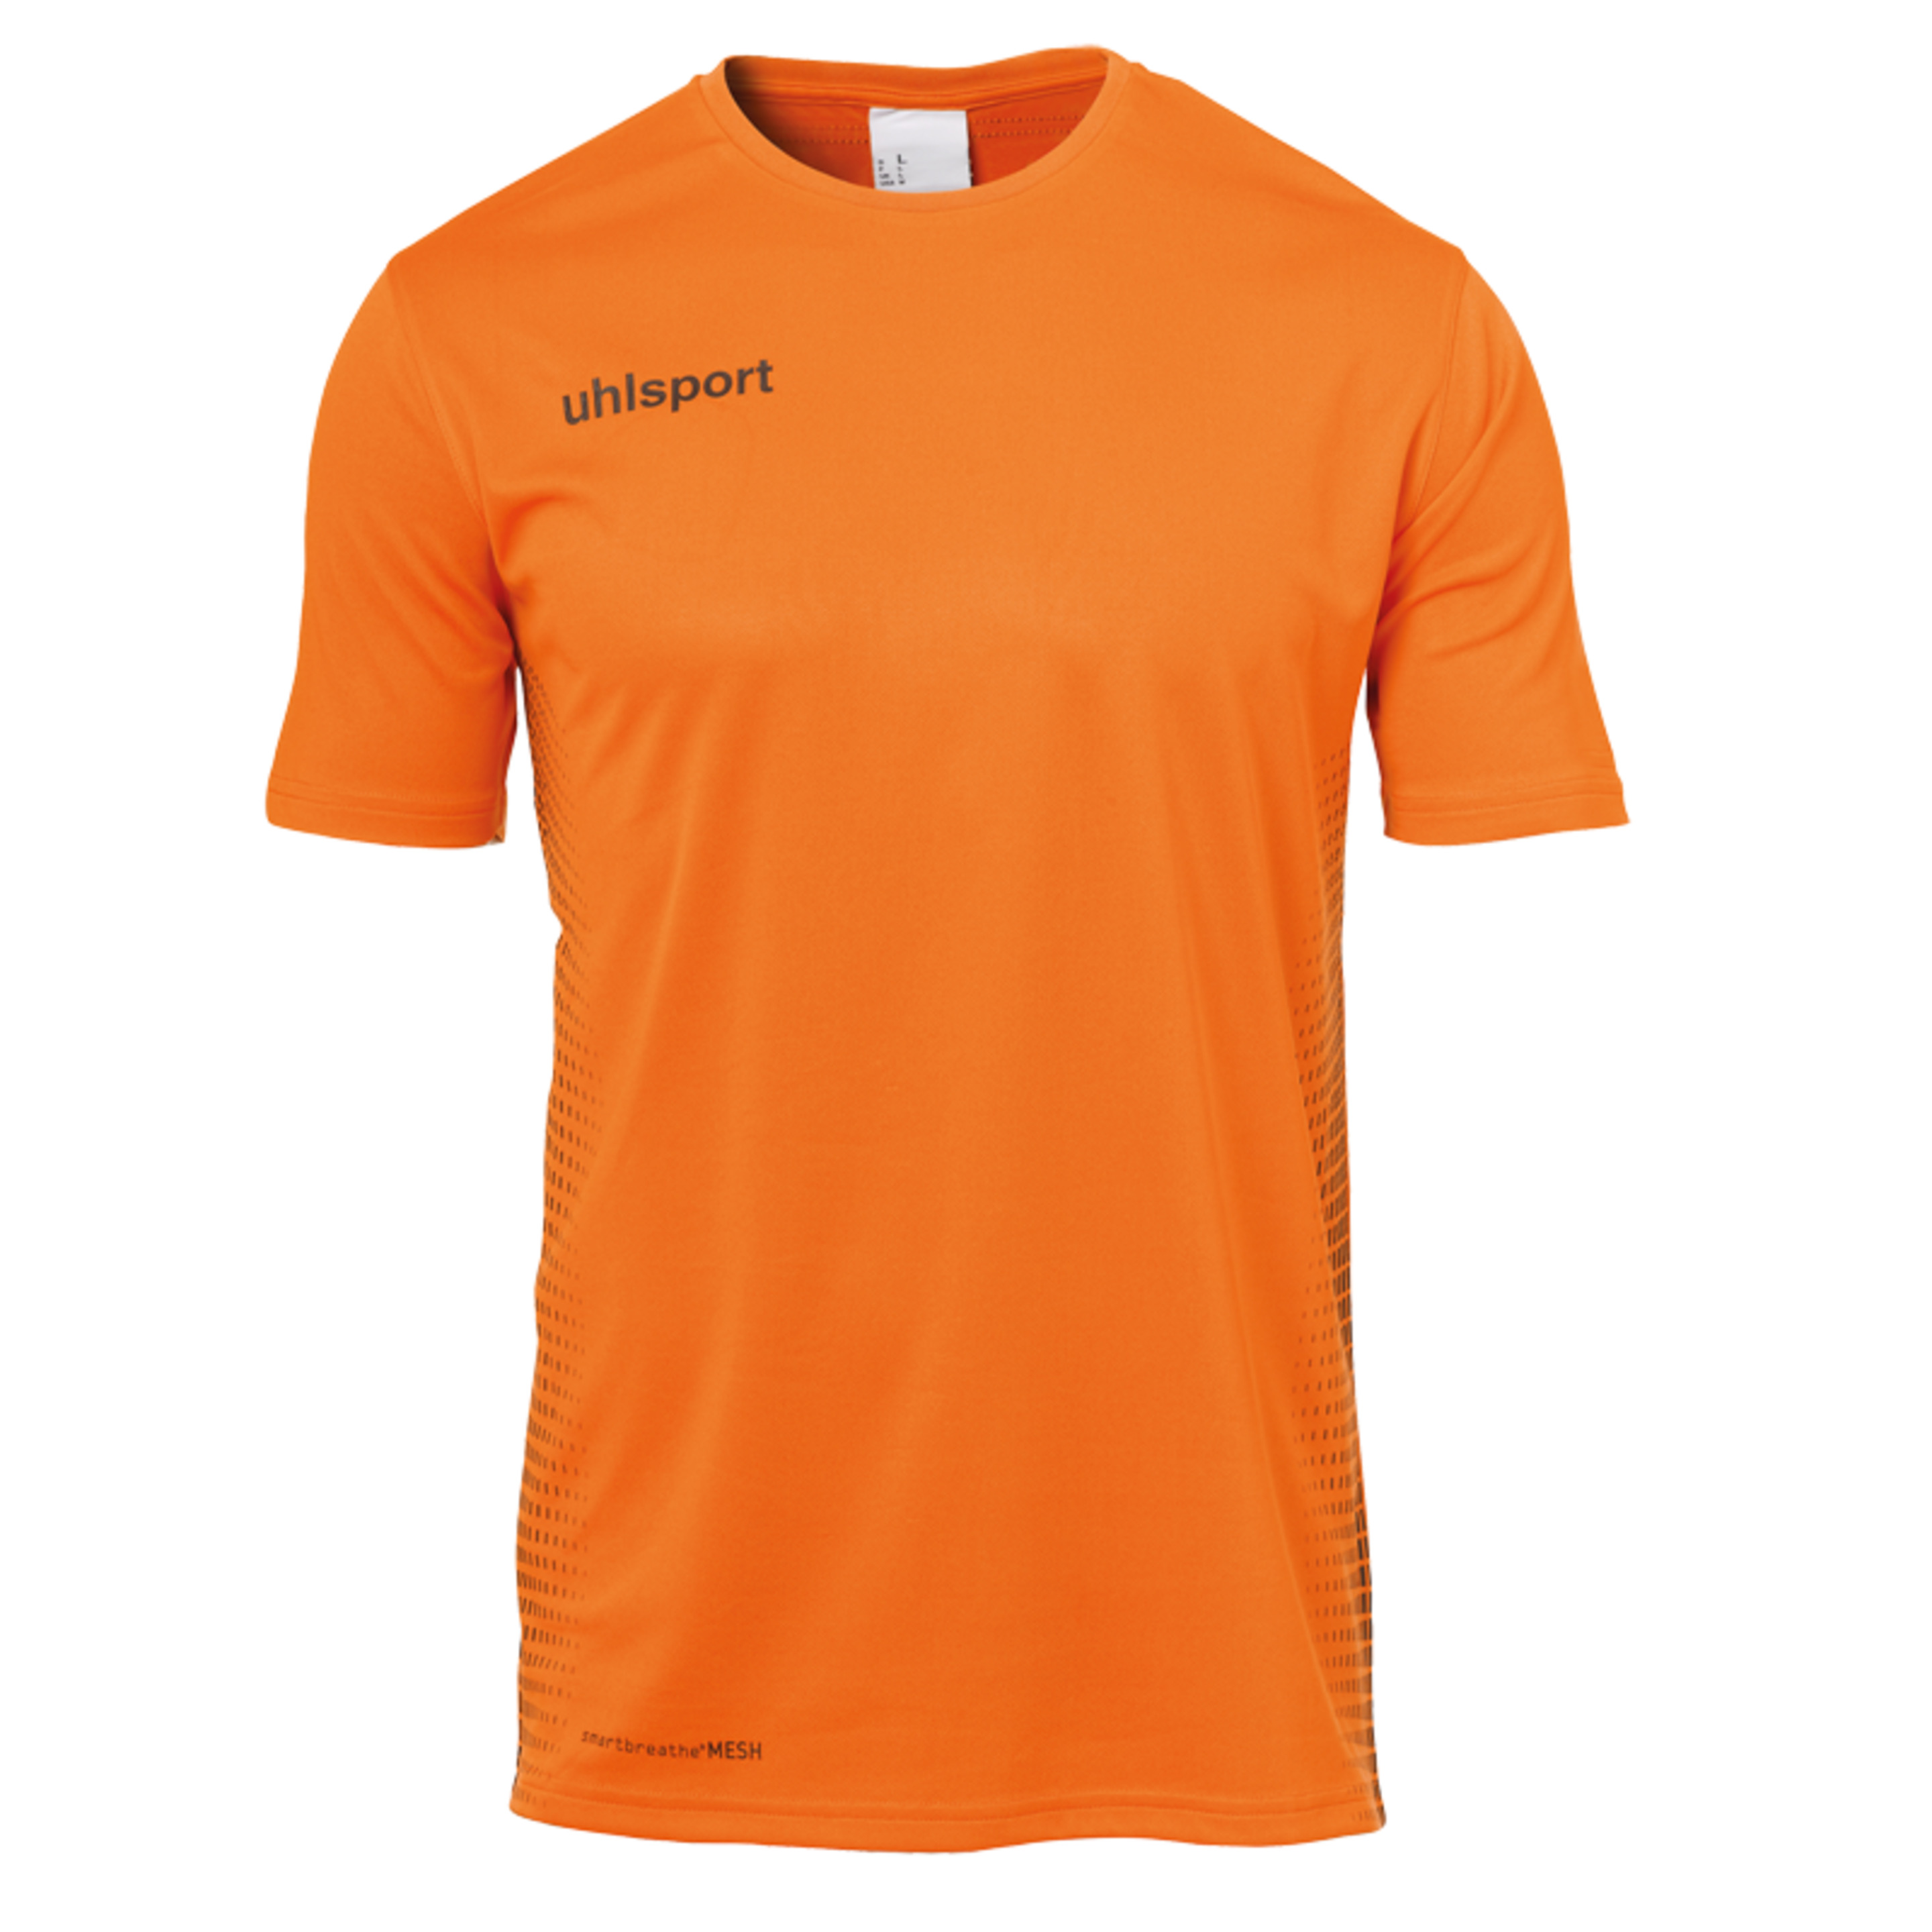 Score Kit Ss Naranja Fluor/negro Uhlsport - negro-naranja - 